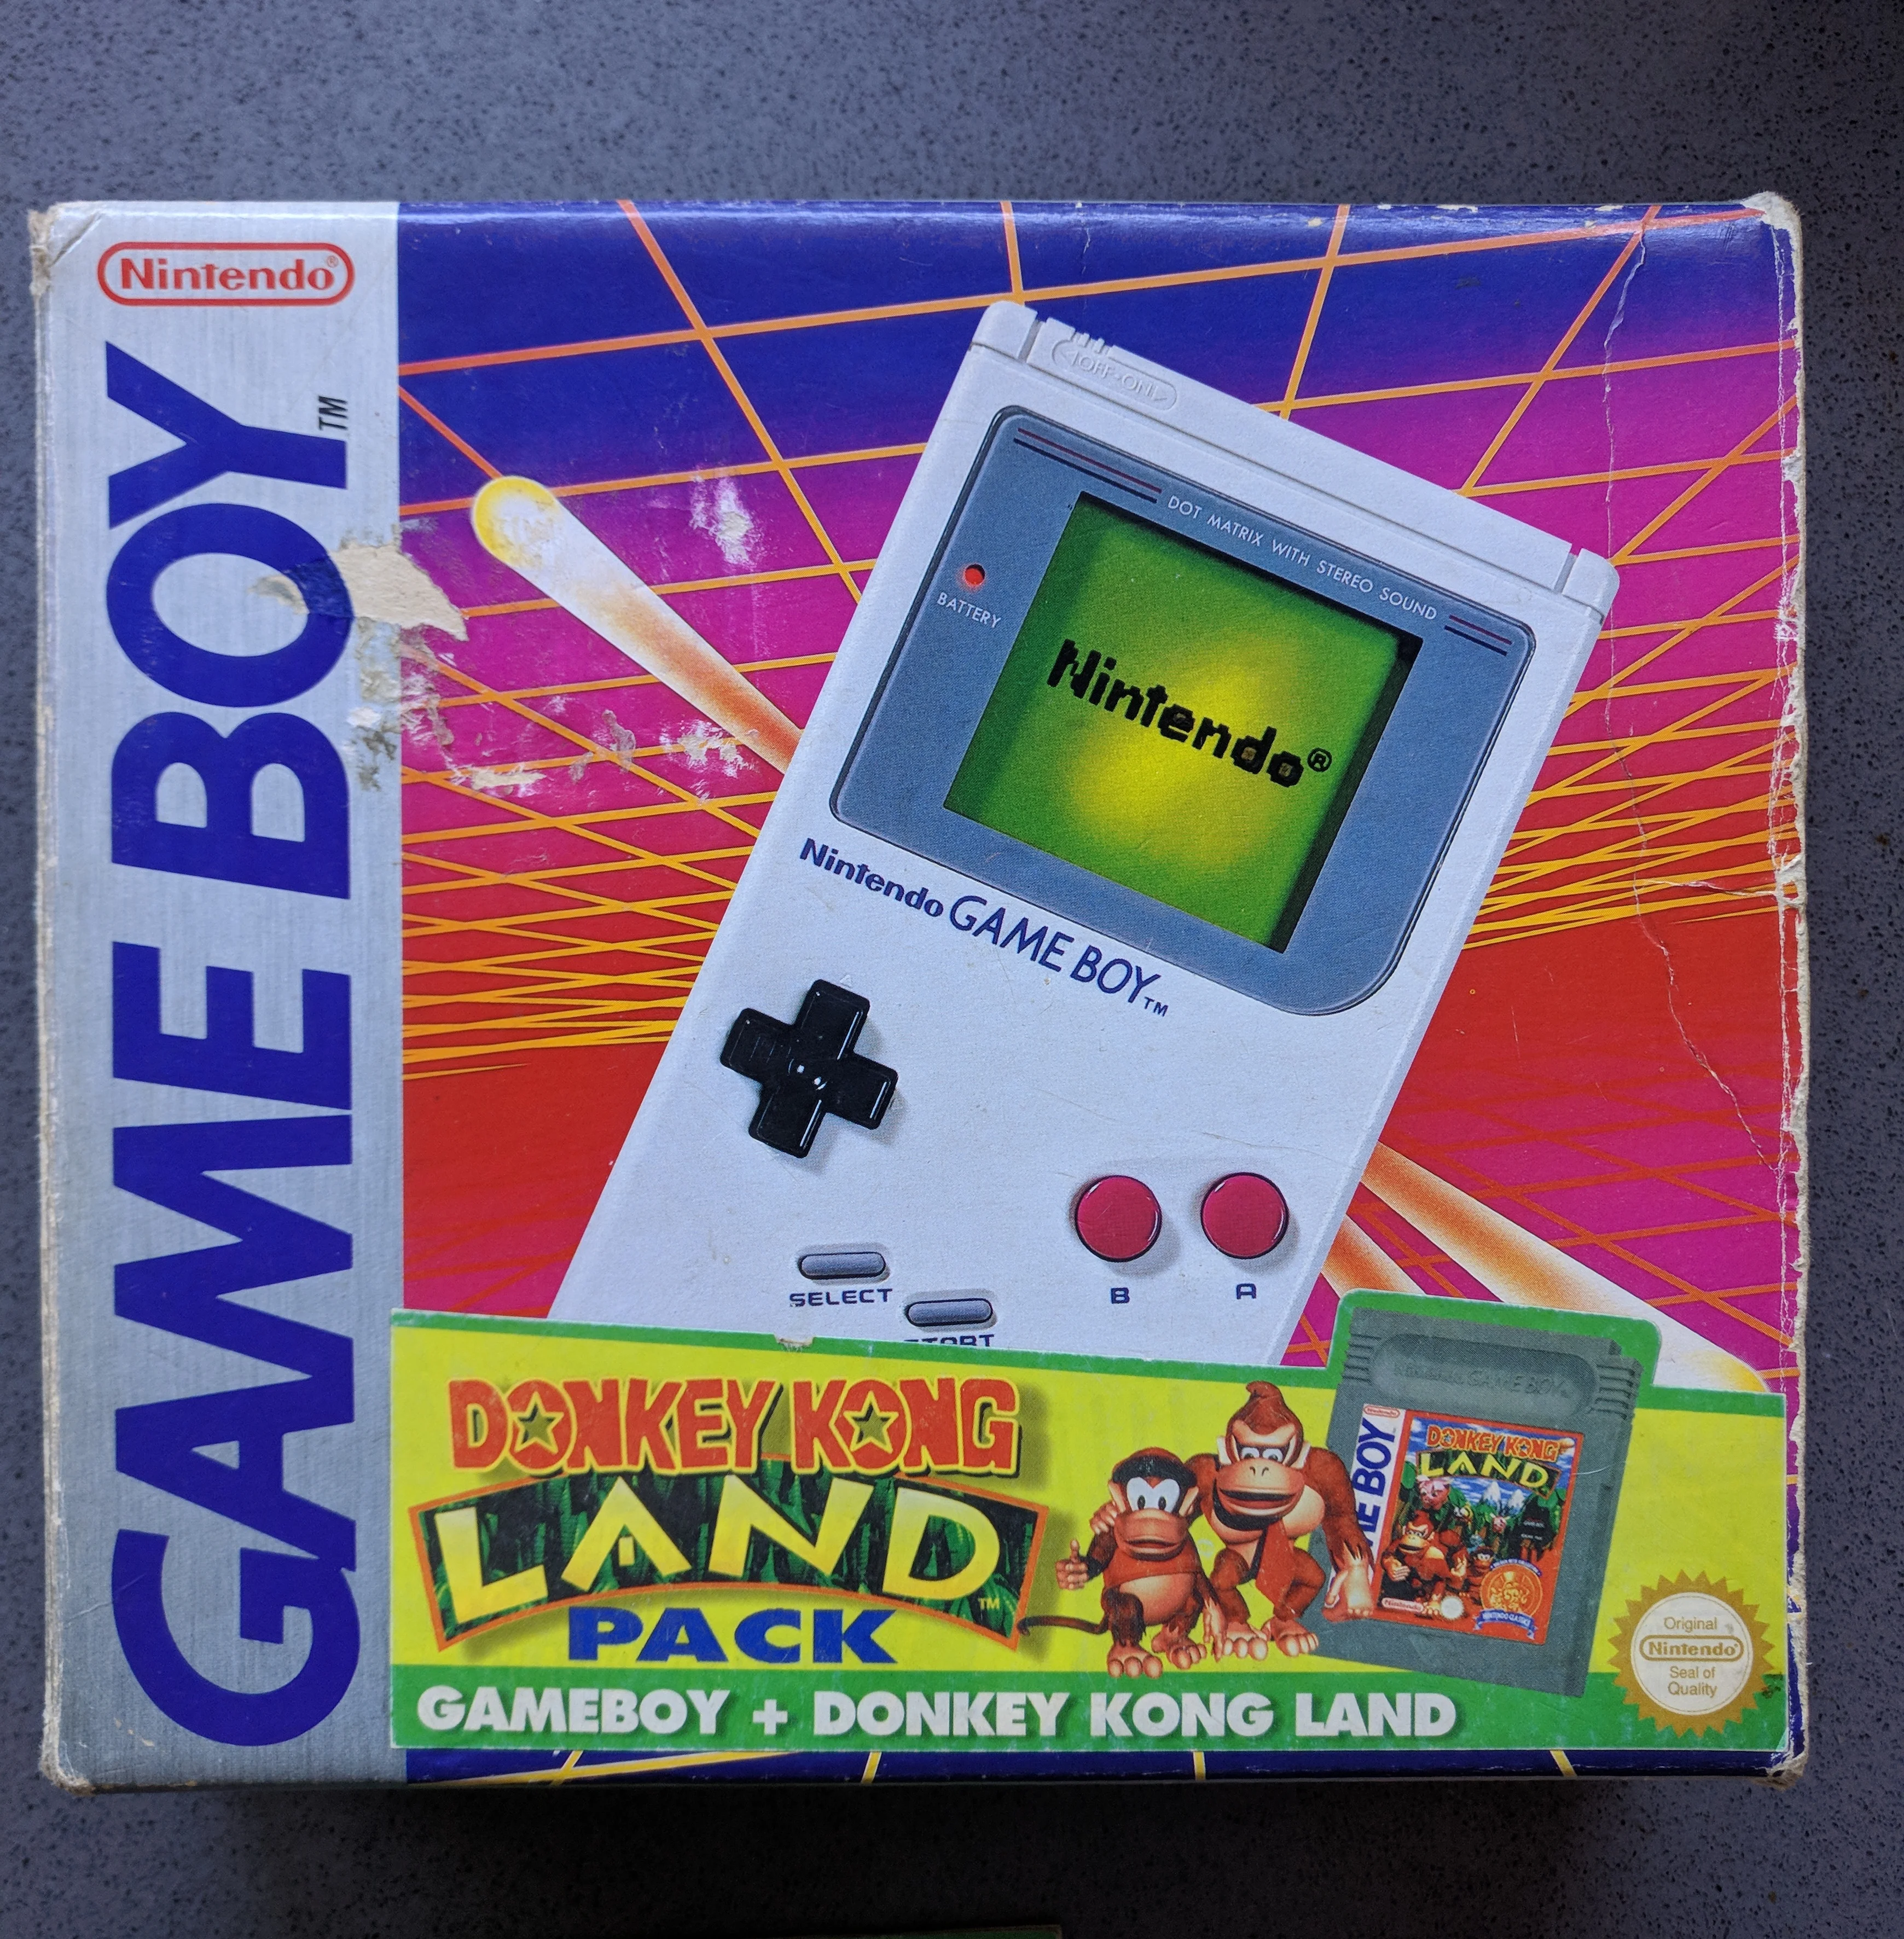  Nintendo Game Boy Donkey Kong Land Bundle